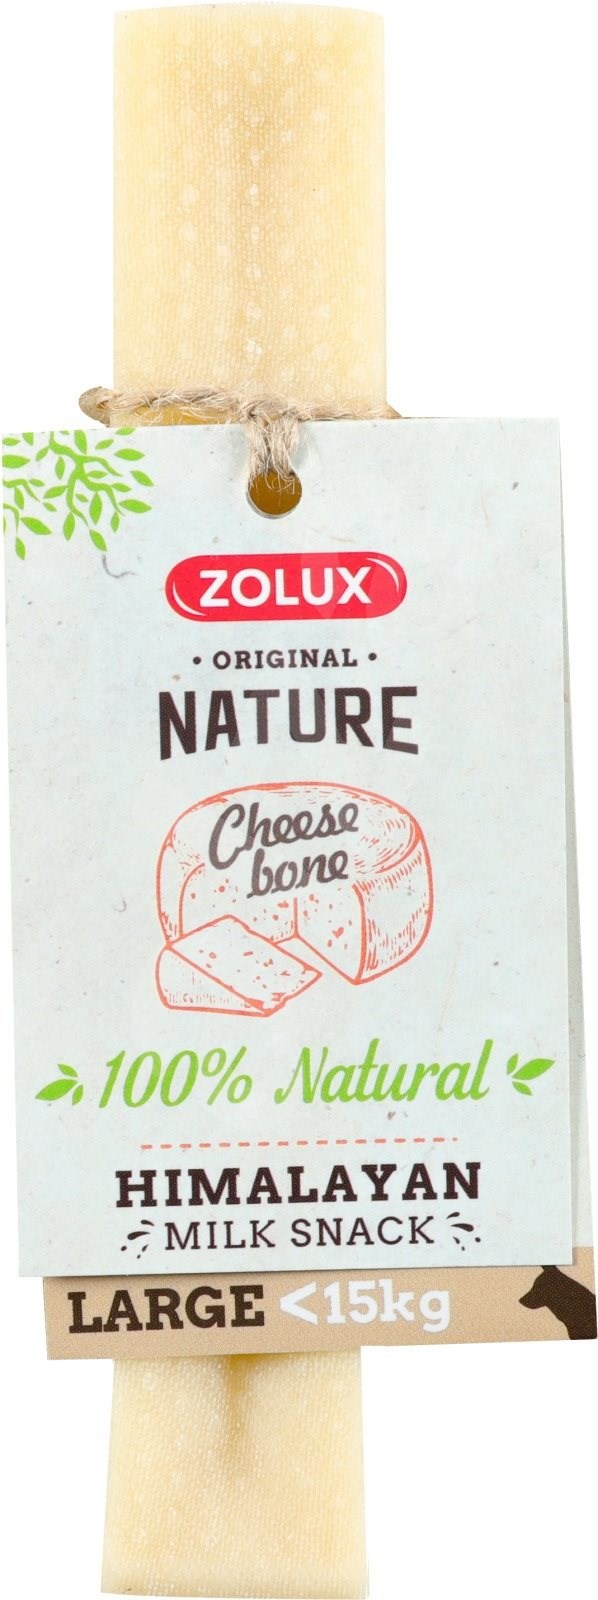 Pochoutka Cheese bone Large pro psa 10-15kg ZOLUX